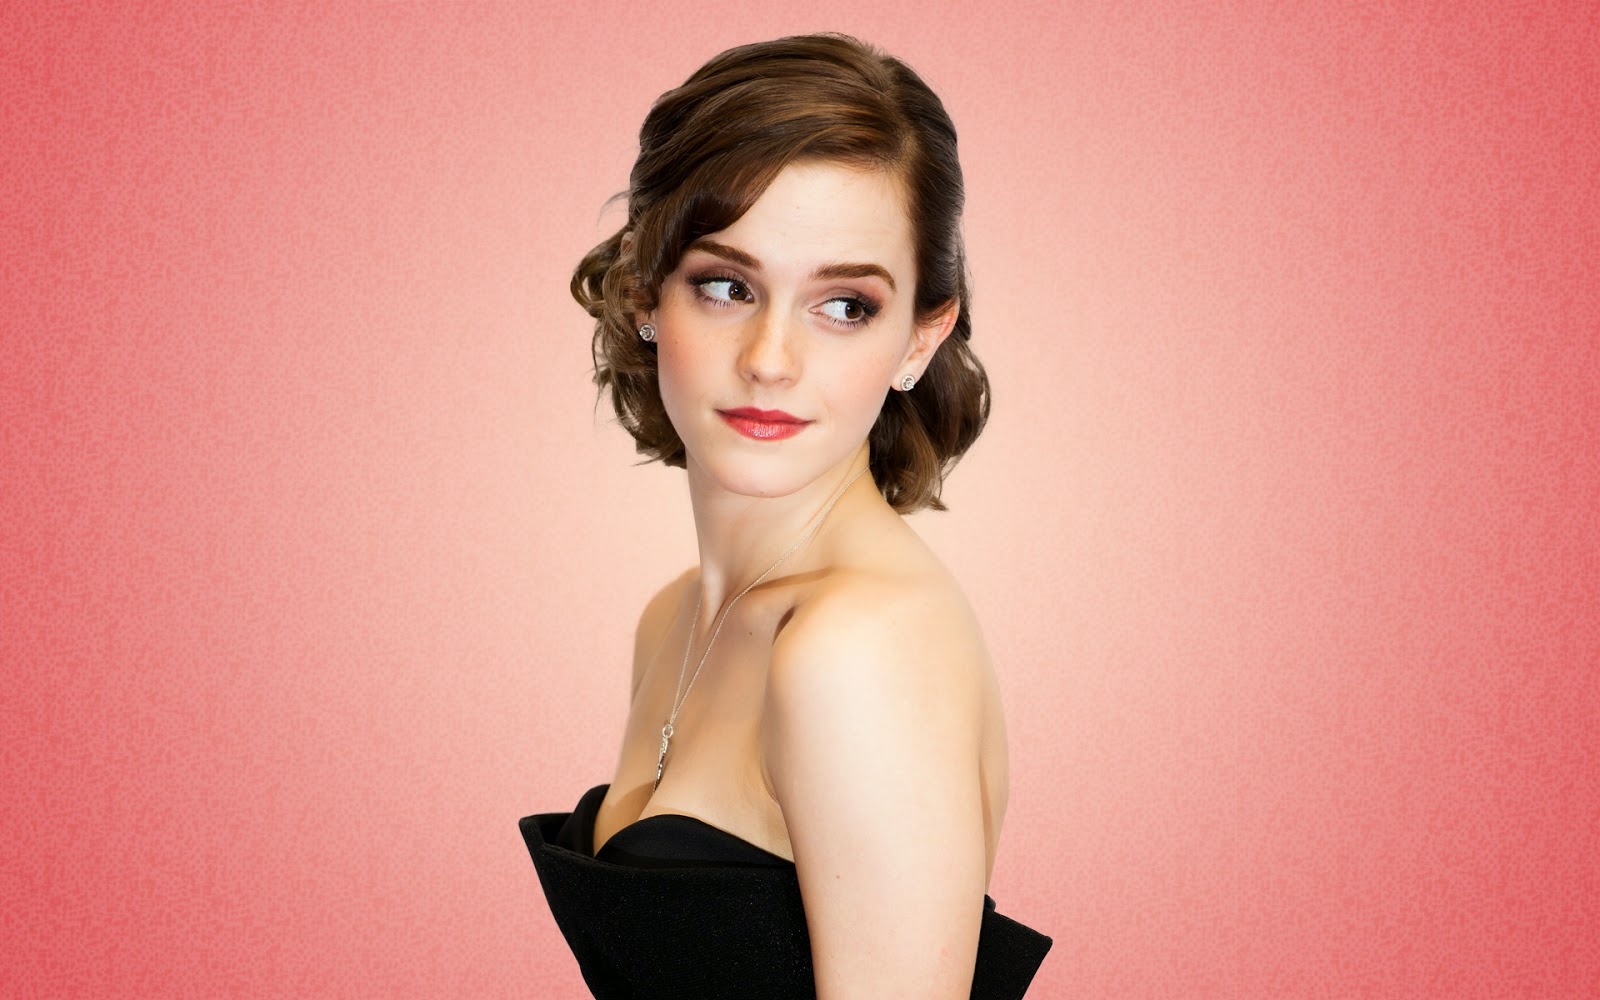 1600px x 1000px - Emma Watson Cast As Belle In New Beauty & The Beast Film - sandwichjohnfilms